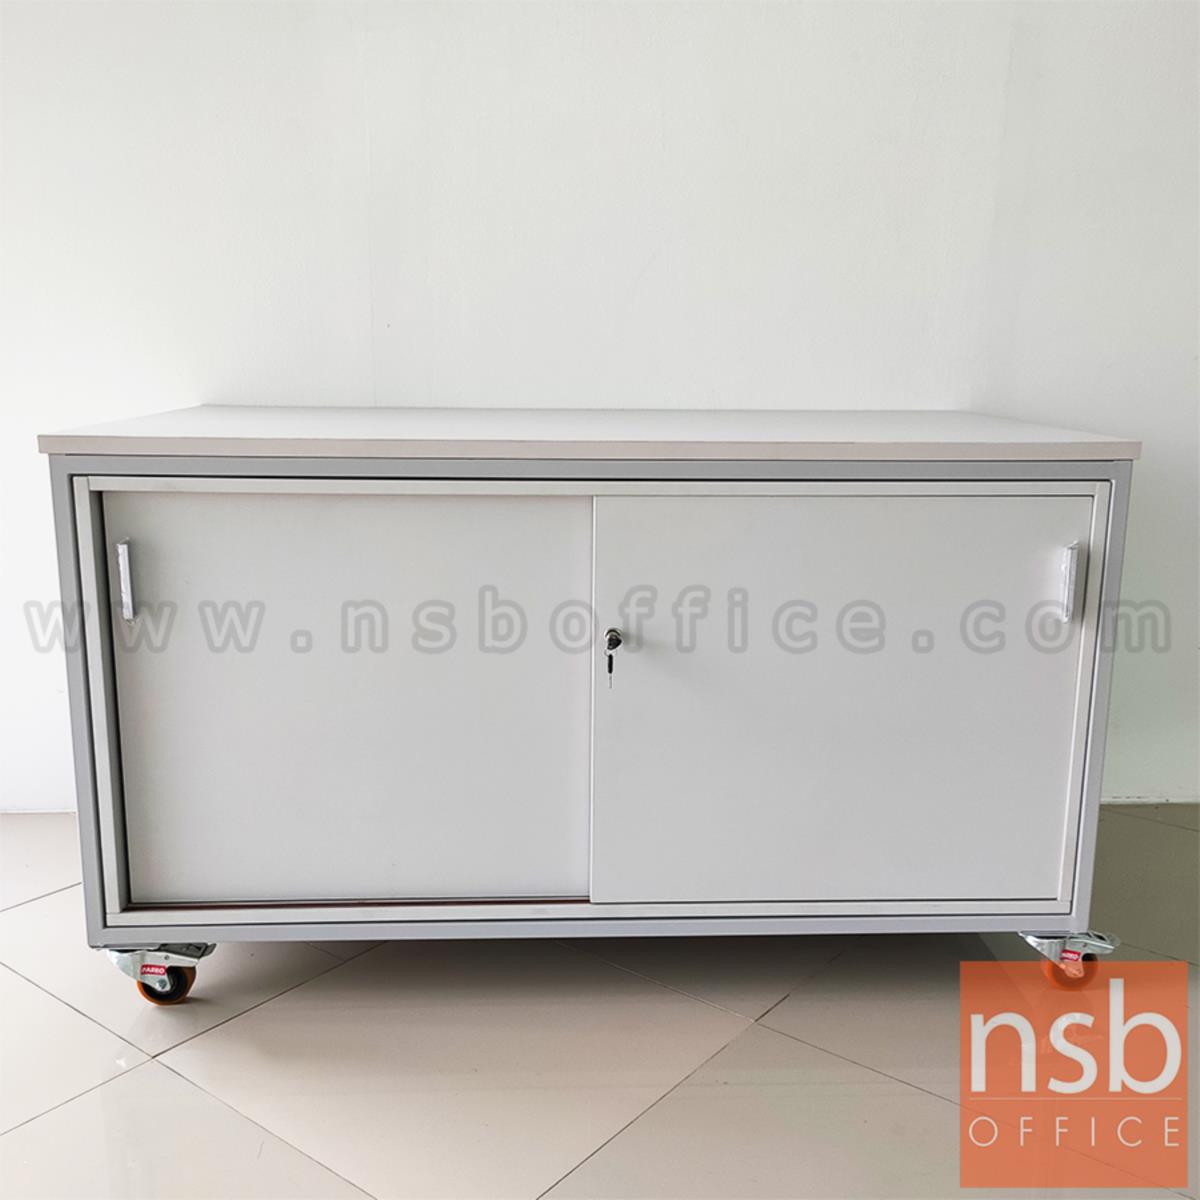 ตู้แลปเก็บอุปกรณ์ บานเลื่อน รุ่น Scenery (ซีนเนอรี่) top HPL ขนาด 150W*80D cm. ล้อเลื่อน